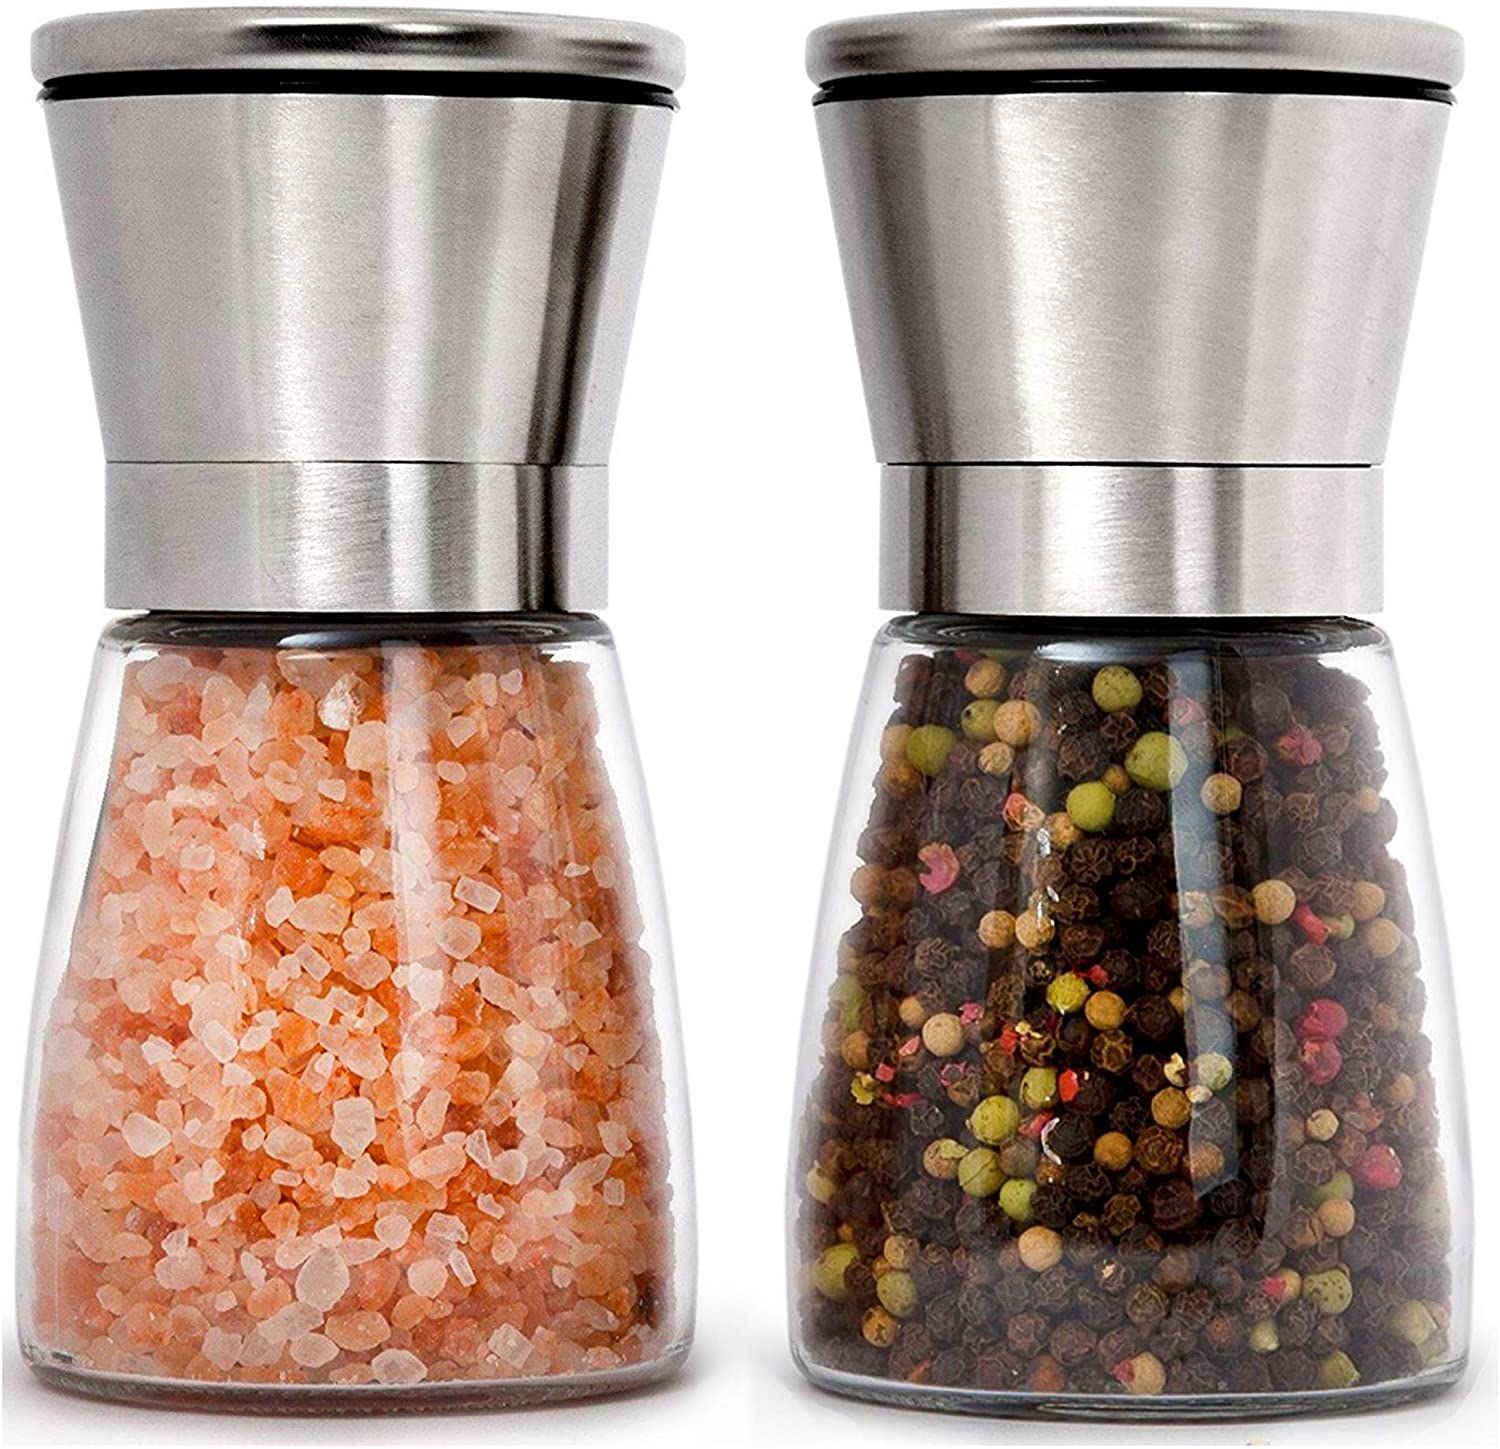 HOME EC Manual BPA-Free Salt And Pepper Shaker